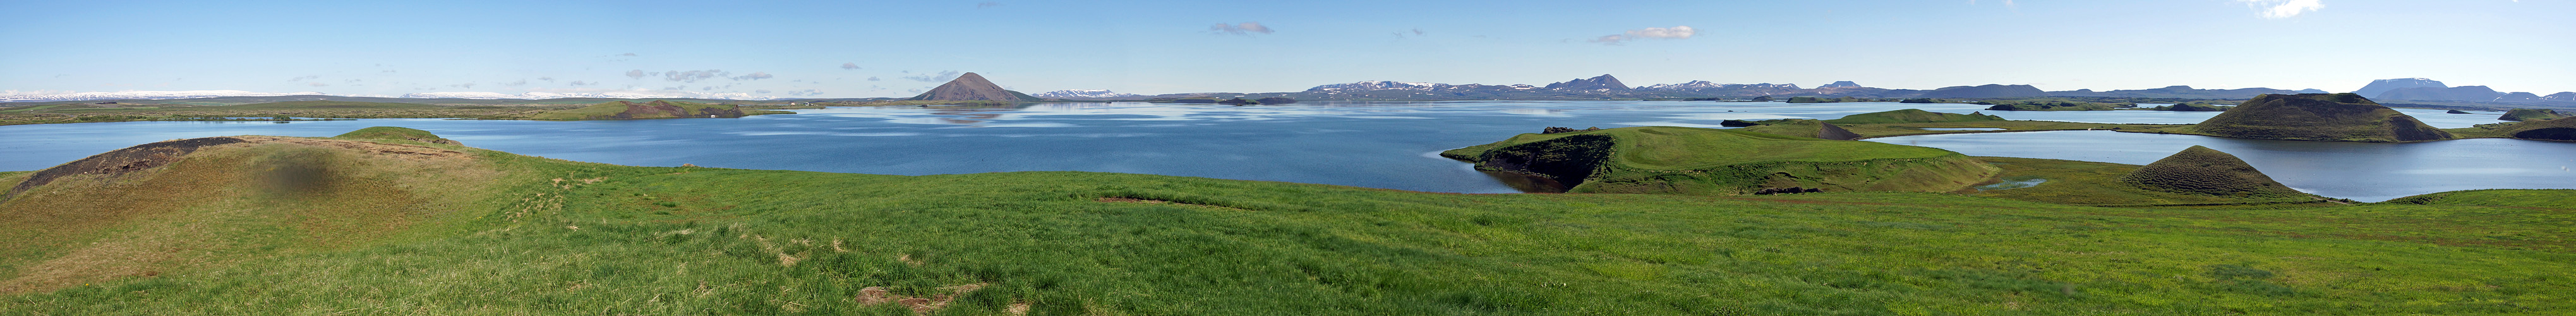 ISLANDE - photo panoramique du lac Mývatn